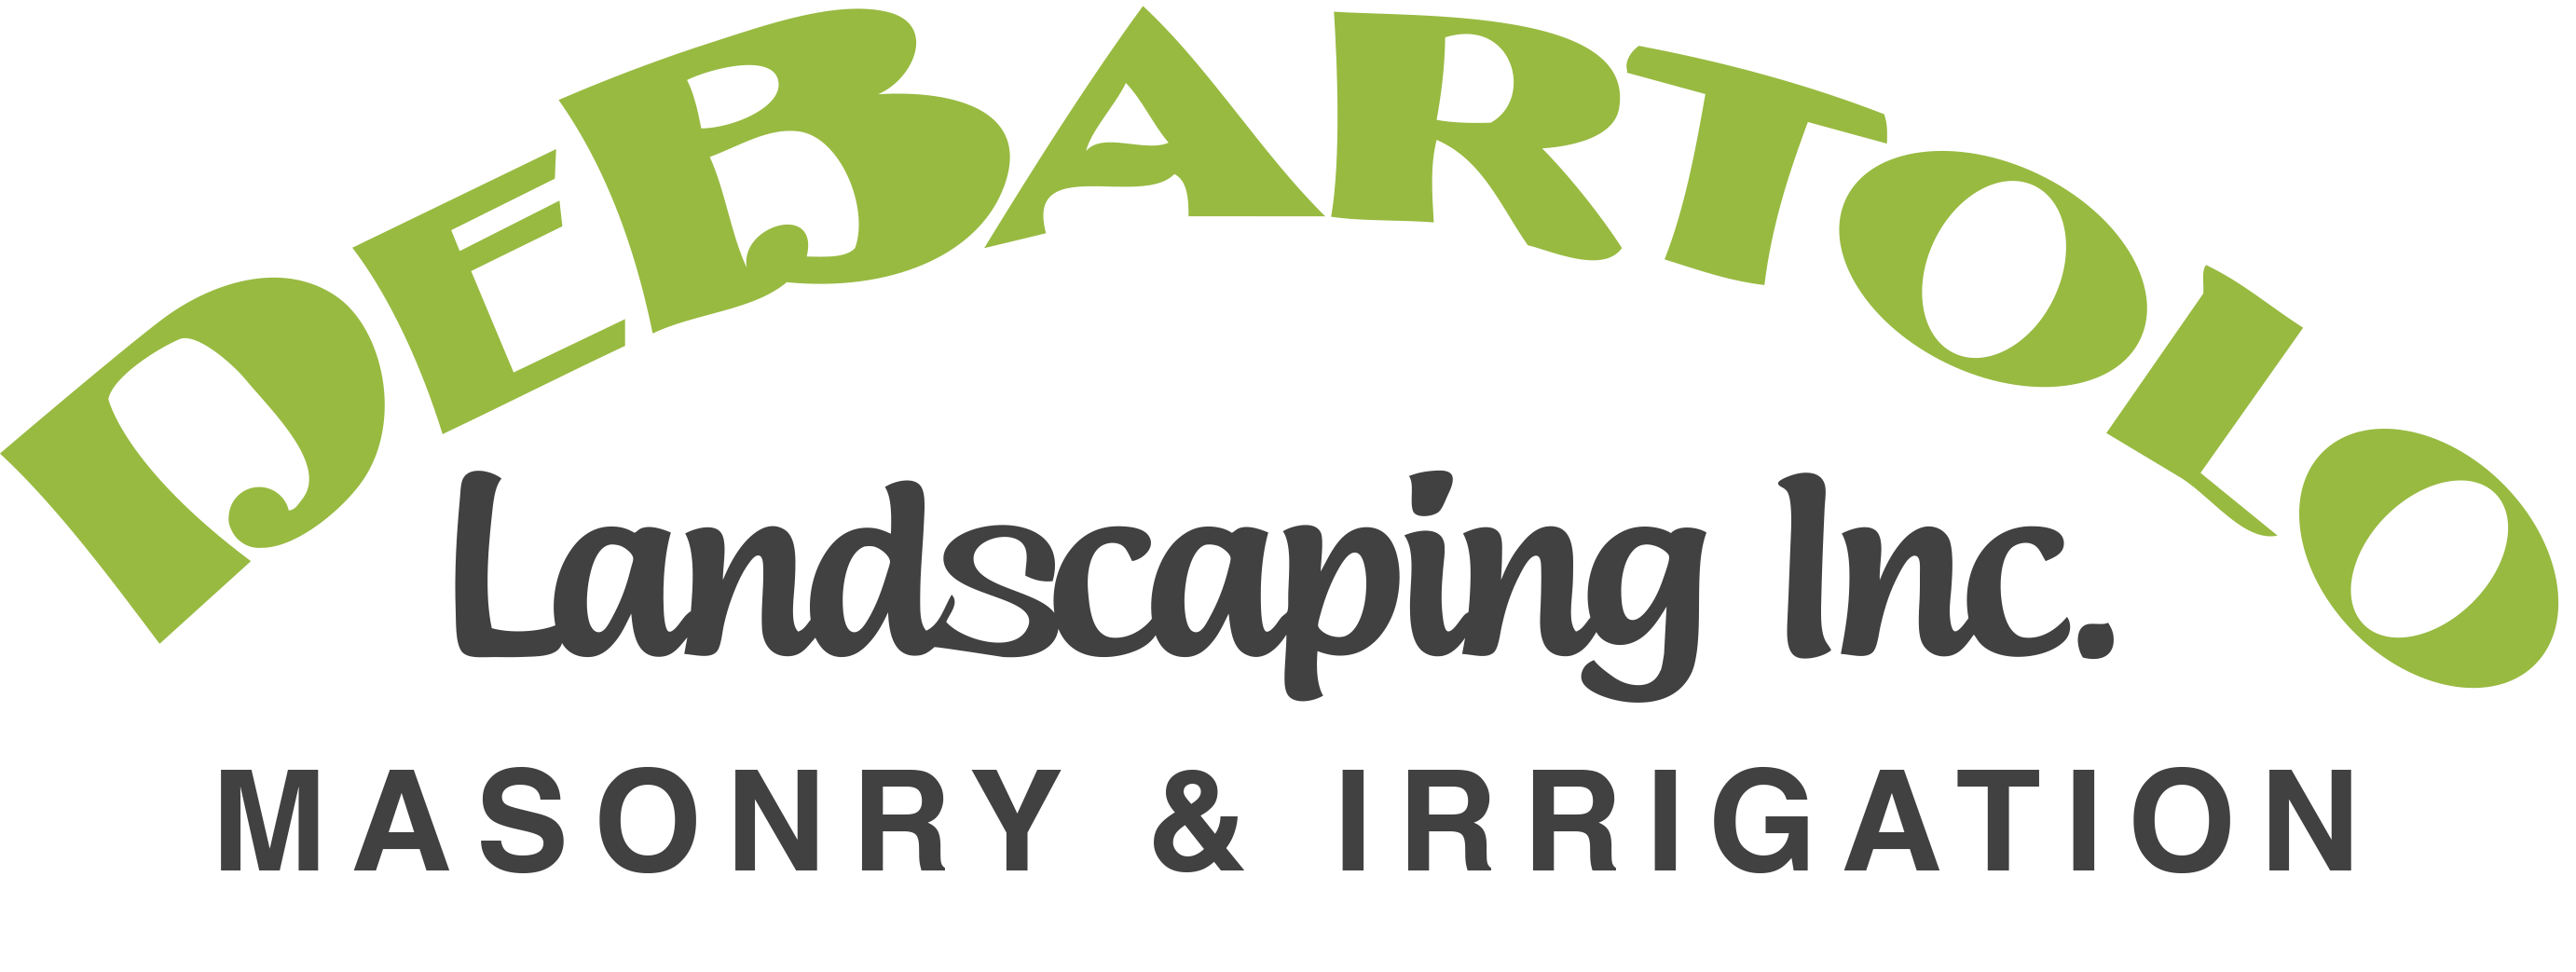 DeBartolo Landscaping, Inc. Logo